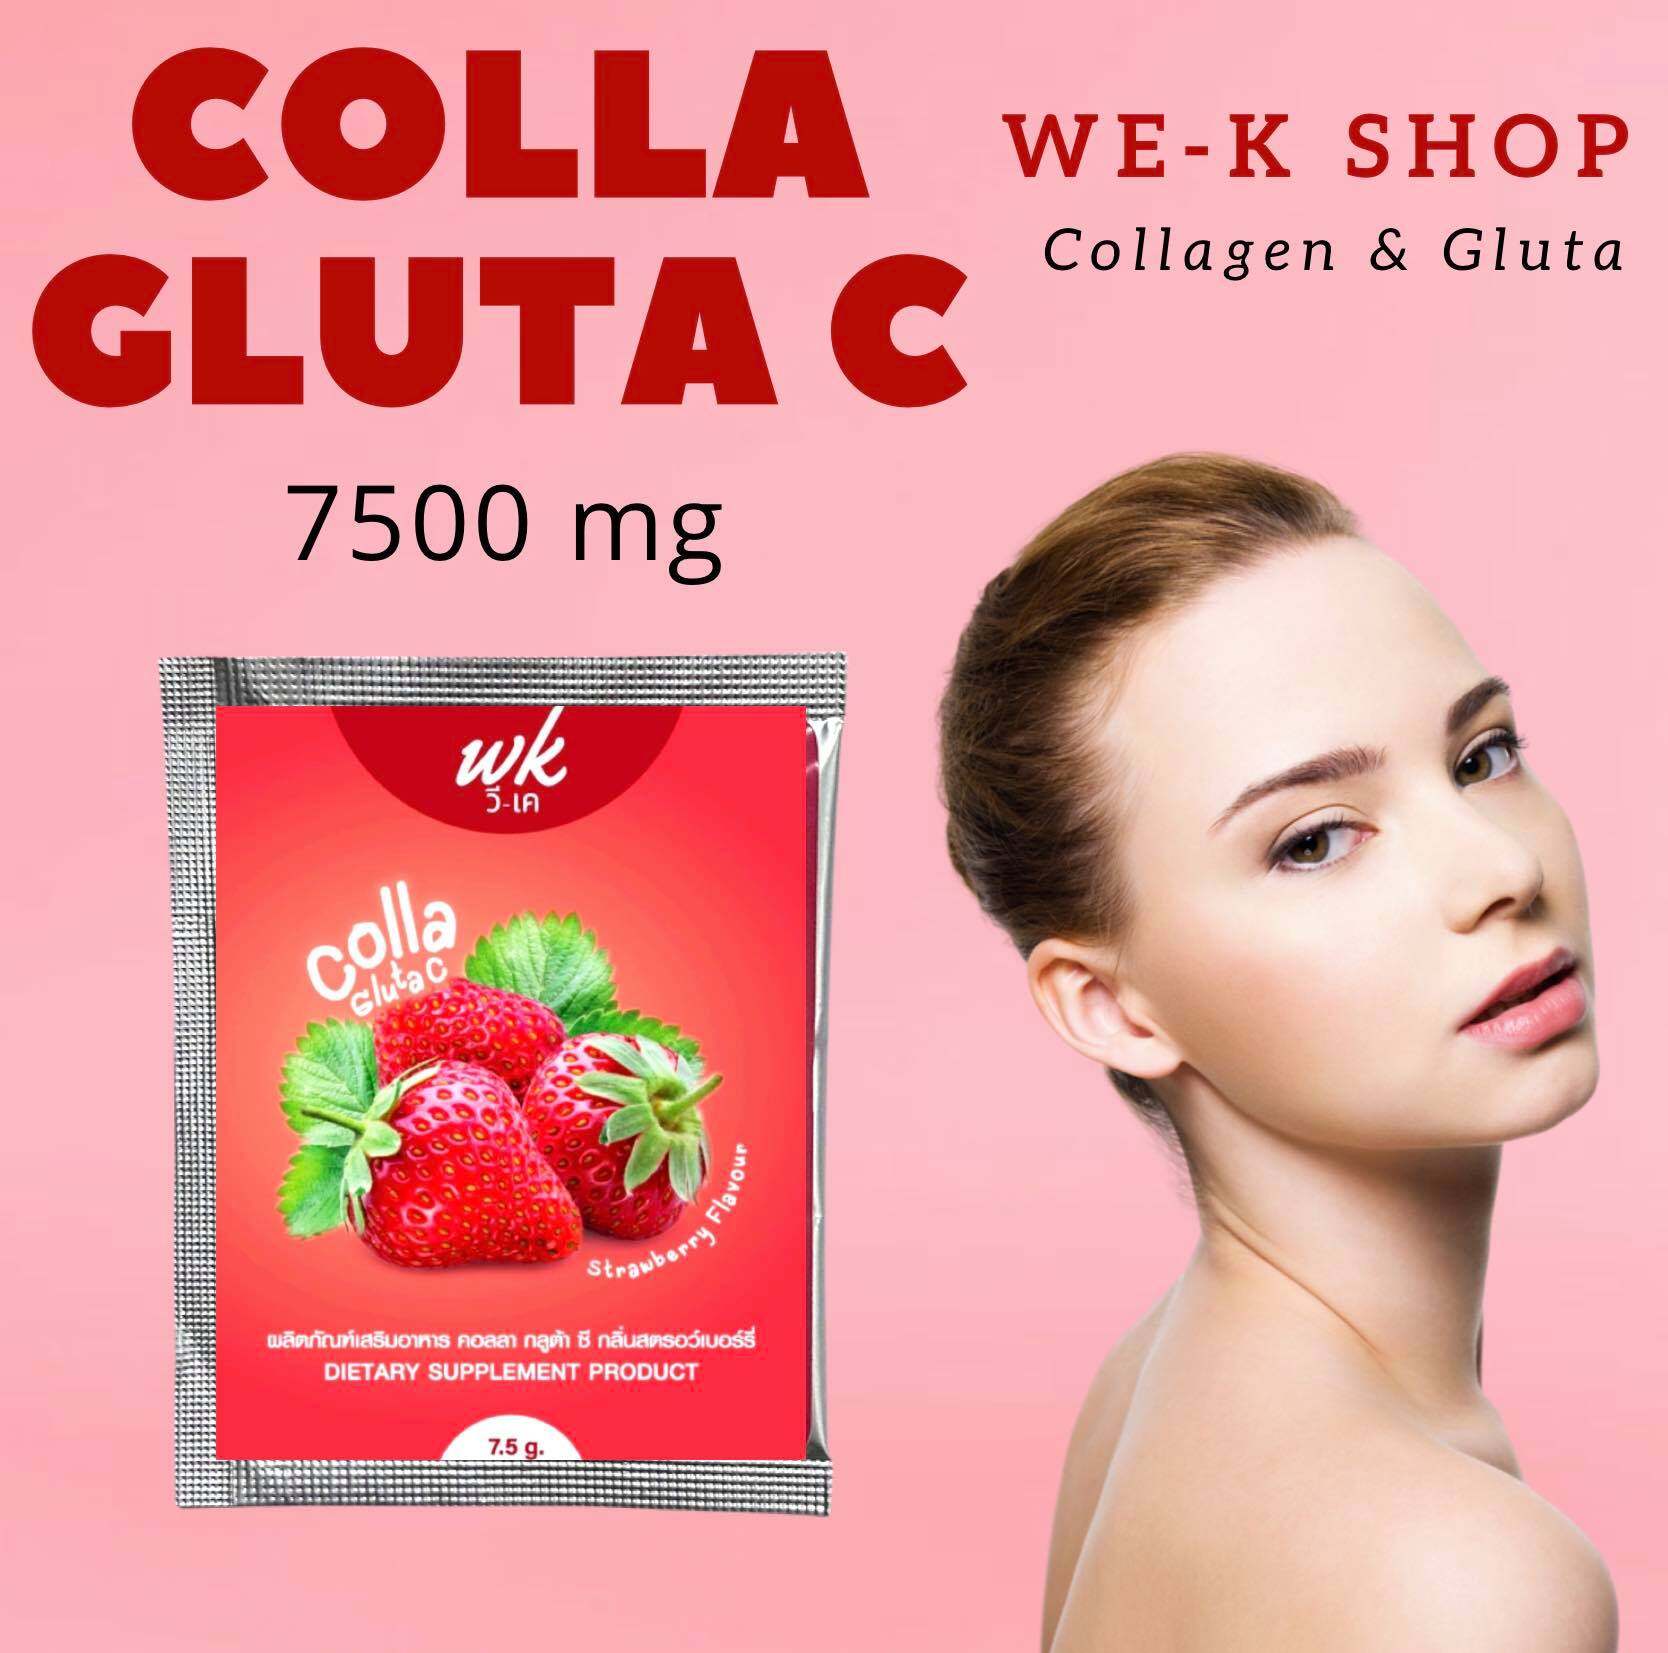 กลูต้า คอลลาเจน Gluta collagen กลิ่นสตรอเบอร์รี่ (Strawberry flavour) แบบผงชงดื่ม (ผลิตภัณฑ์เสริมอาหาร คอลลาเจนไตรเปบไทด์) Colla Gluta C